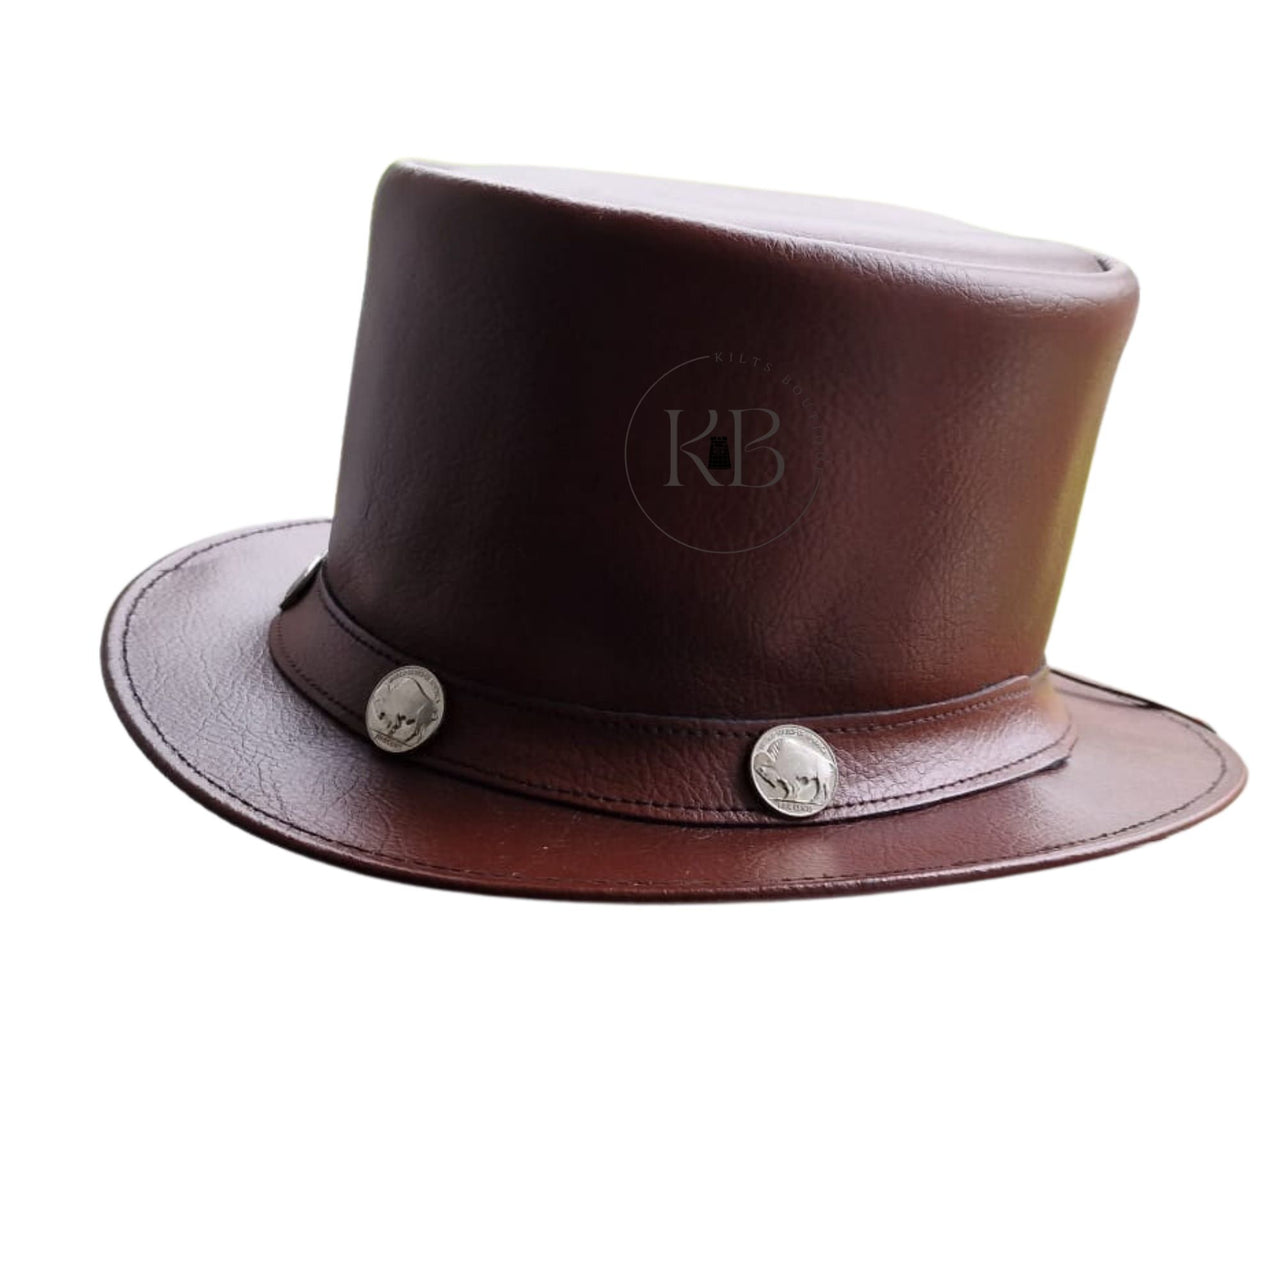 Burgundy El Dorado Steampunk Deadman Leather Top Hat w/ Buffalo Rider Bull Studs